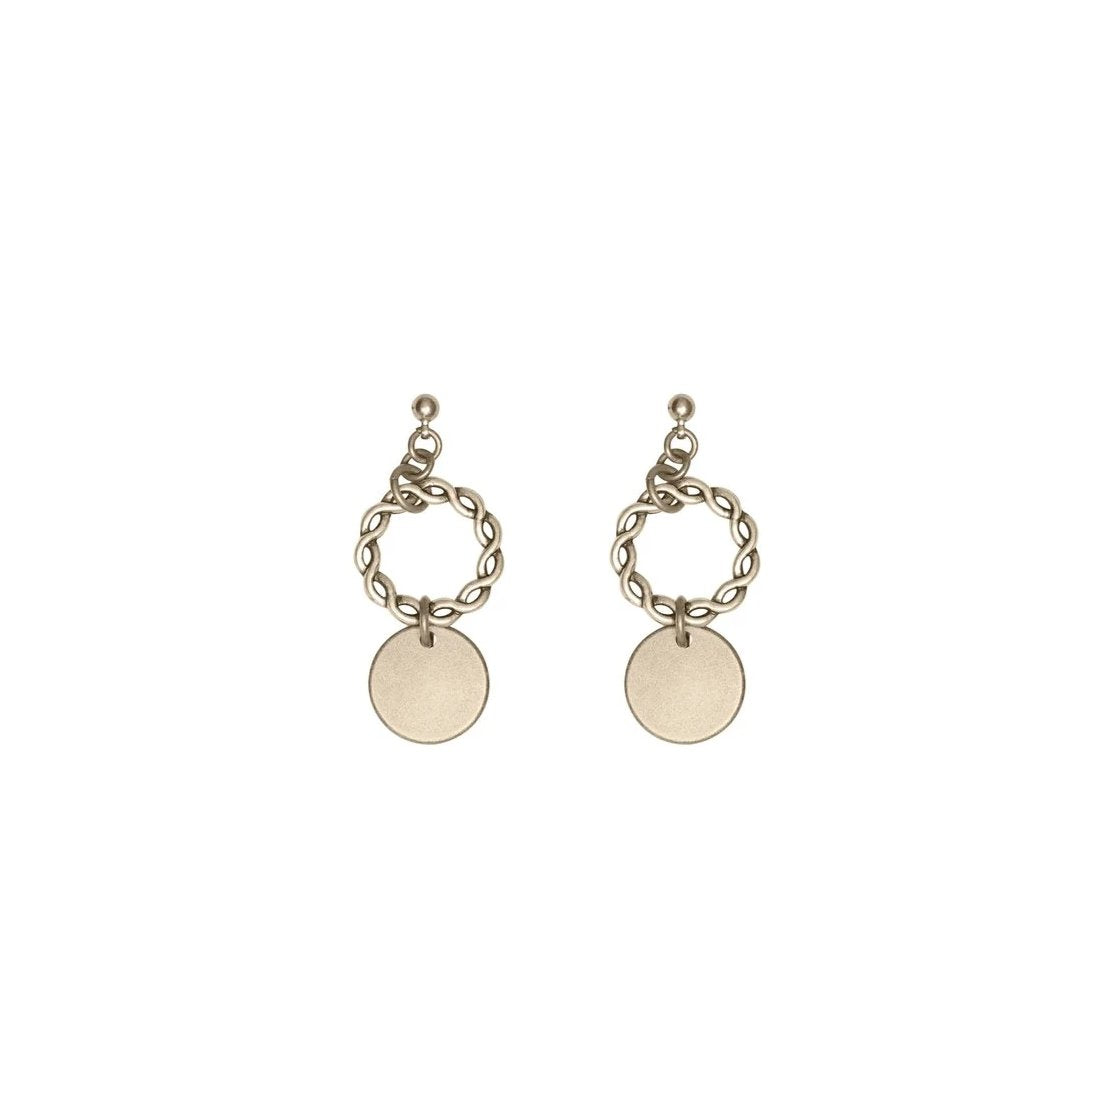 Handmade gold earrings for women.